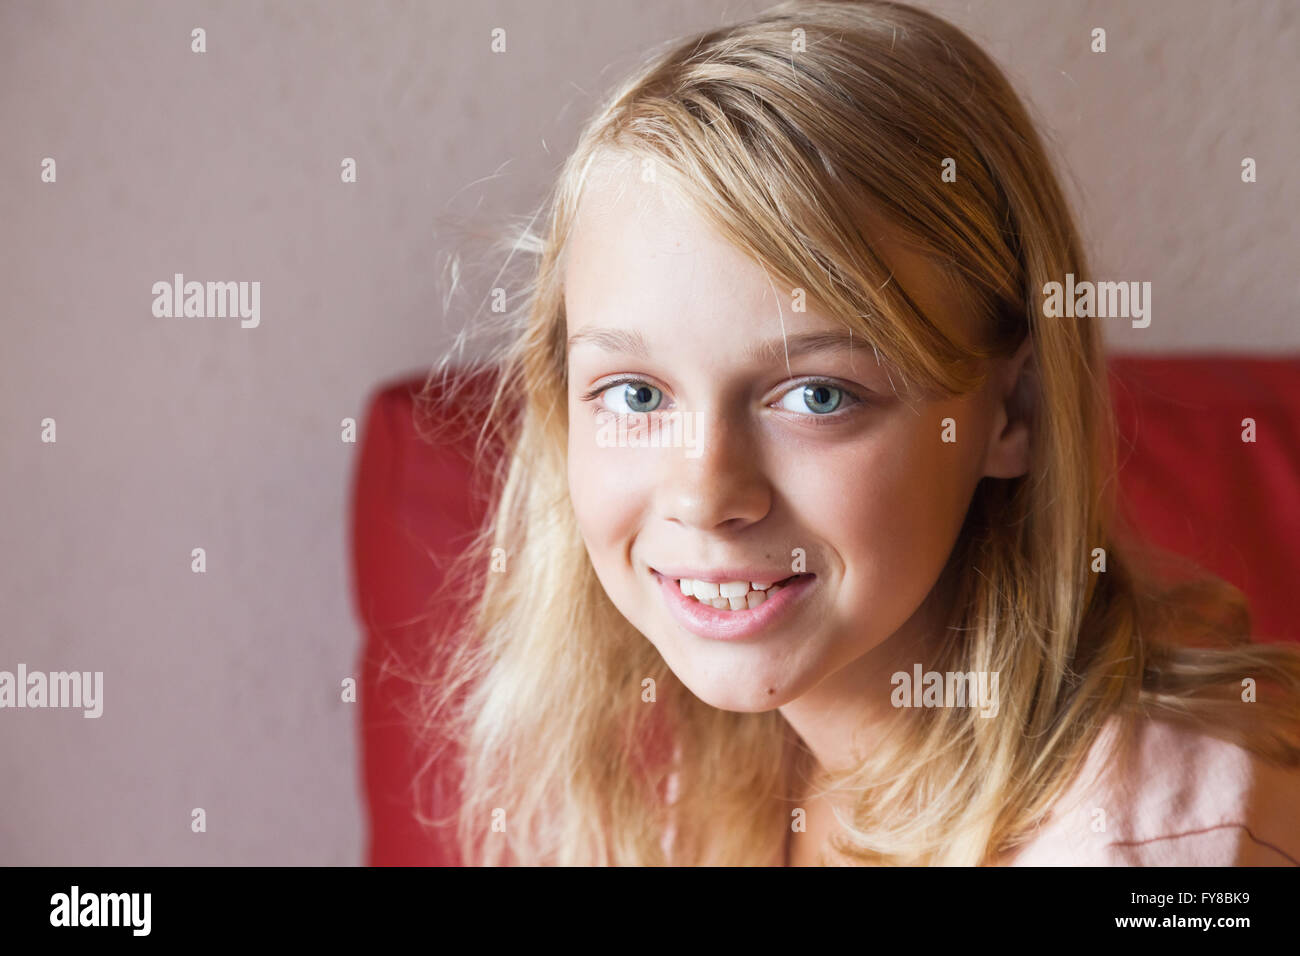 Nahaufnahme Gesicht Porträt von schönen blonden lächelnden kaukasische Mädchen Stockfoto